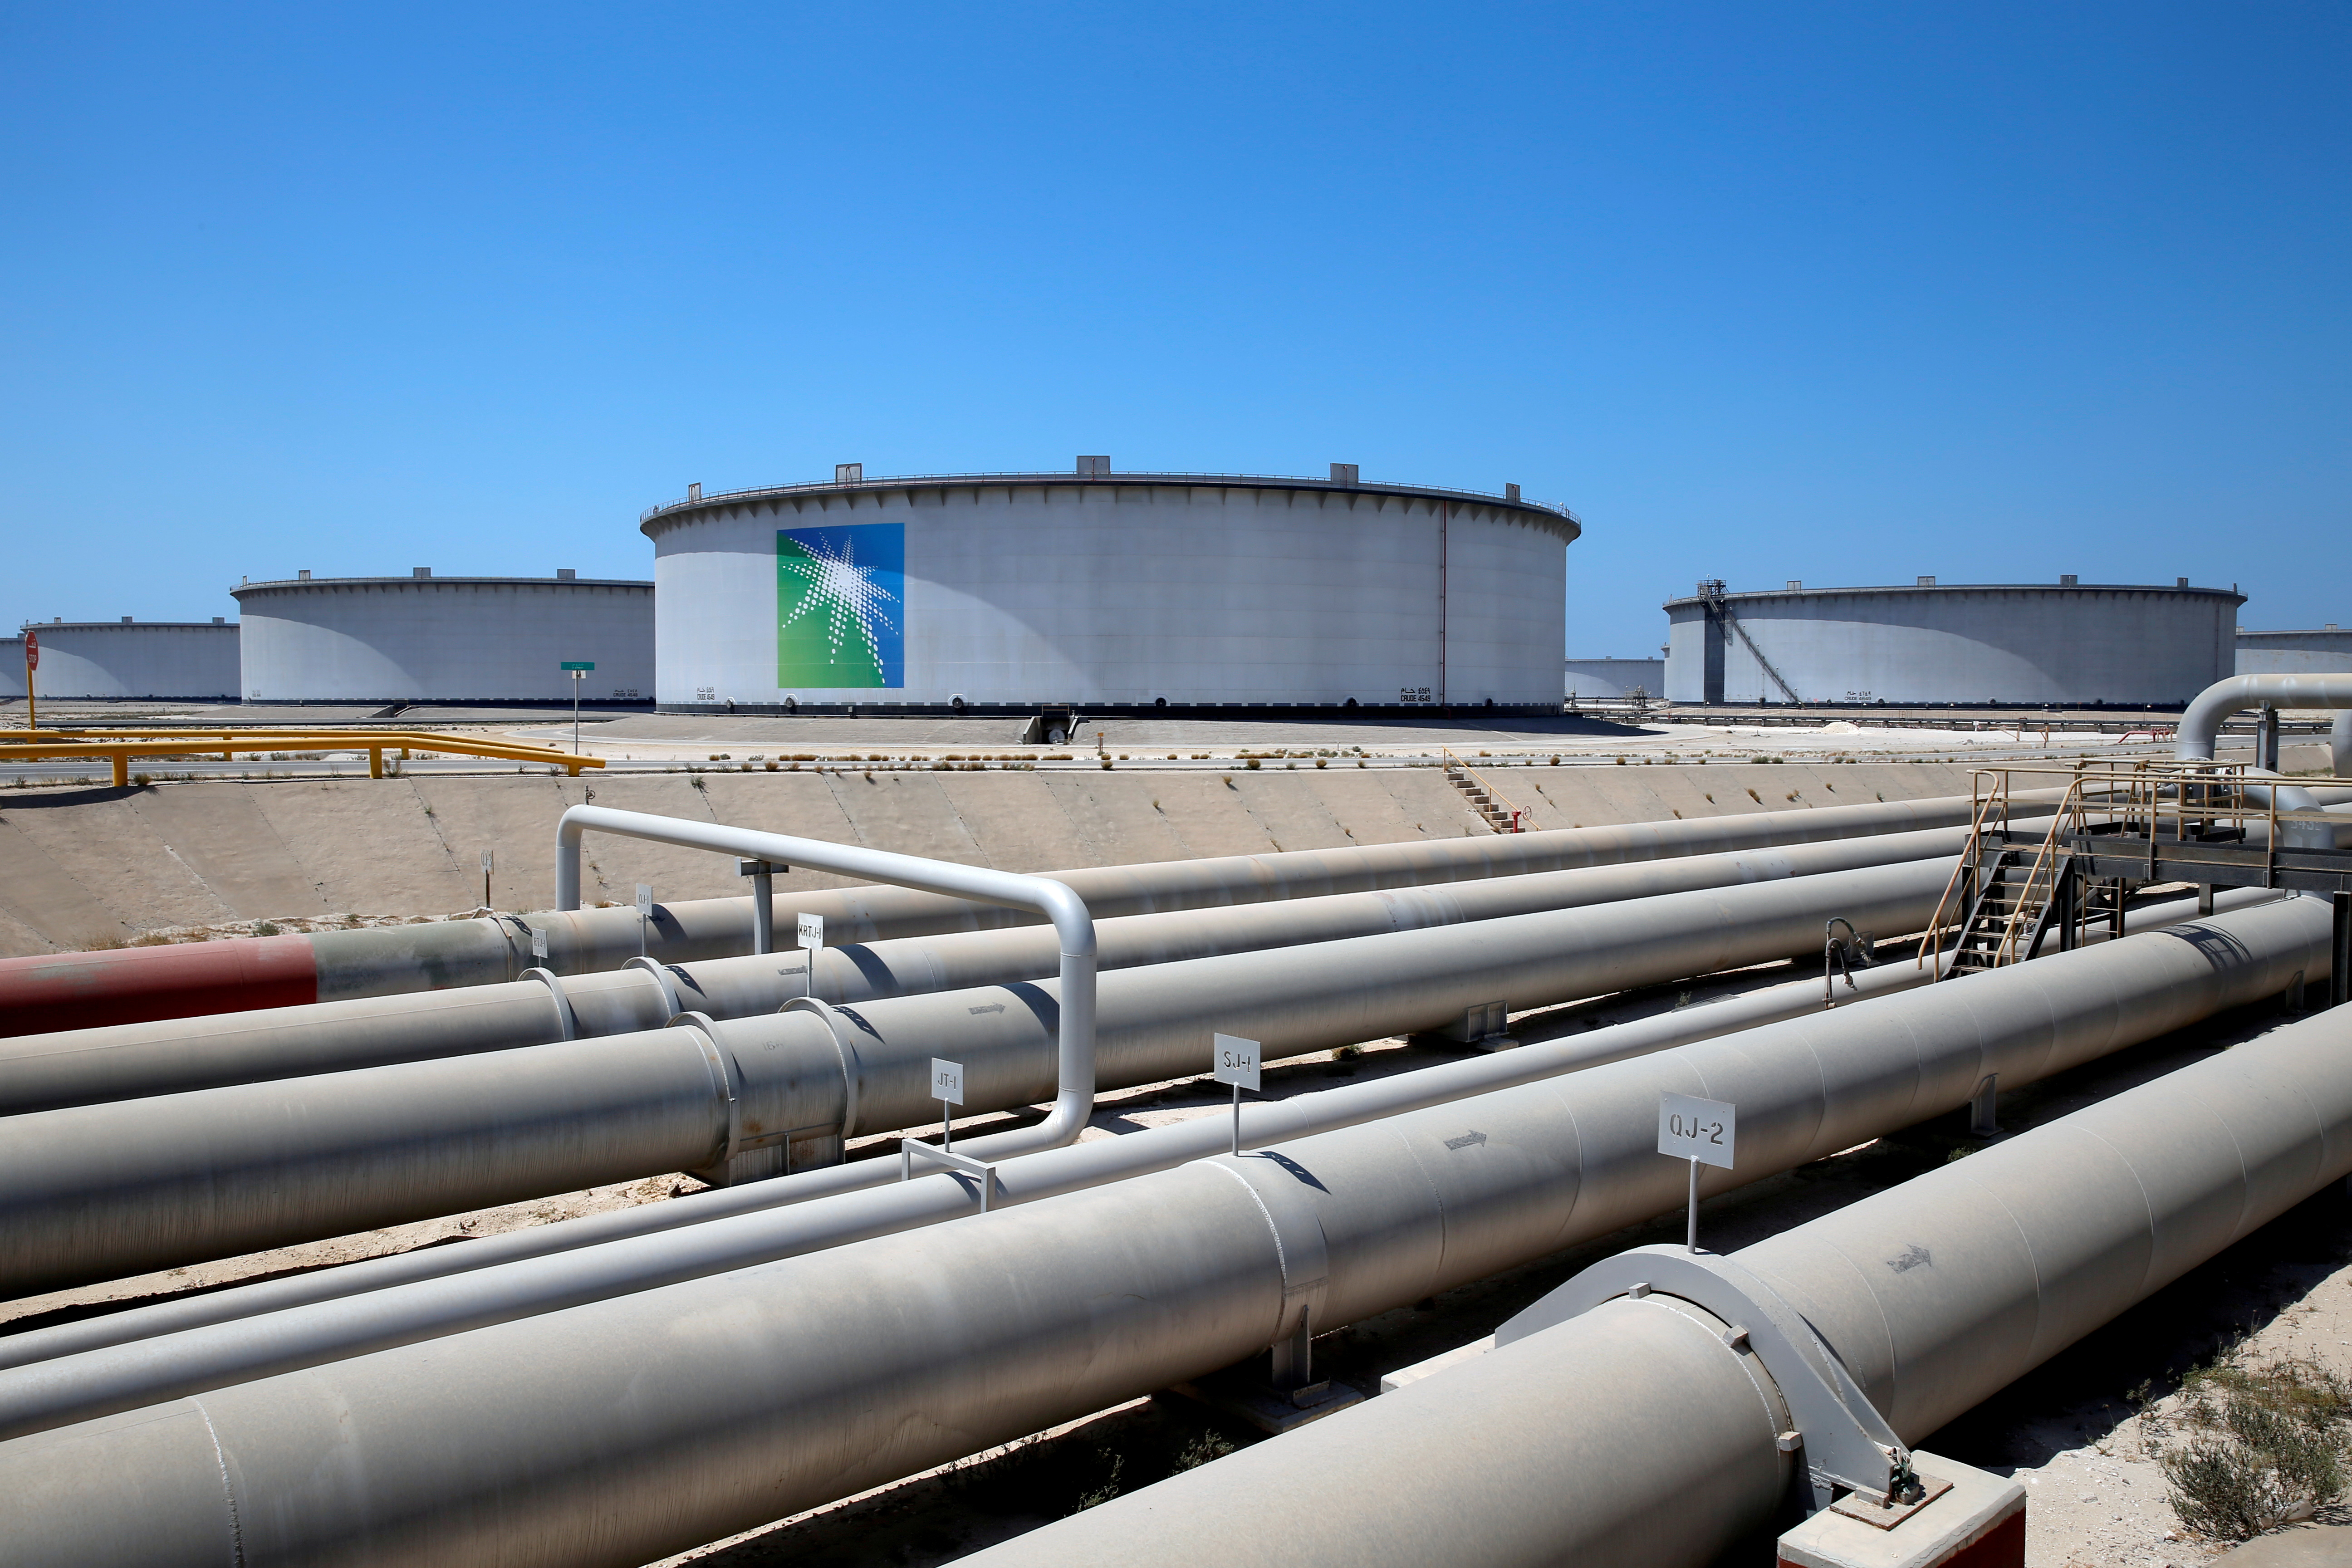 General view of Aramco tanks and oil pipe at Saudi Aramco's Ras Tanura oil refinery and oil terminal in Saudi Arabia May 21, 2018. REUTERS/Ahmed Jadallah/File Photo